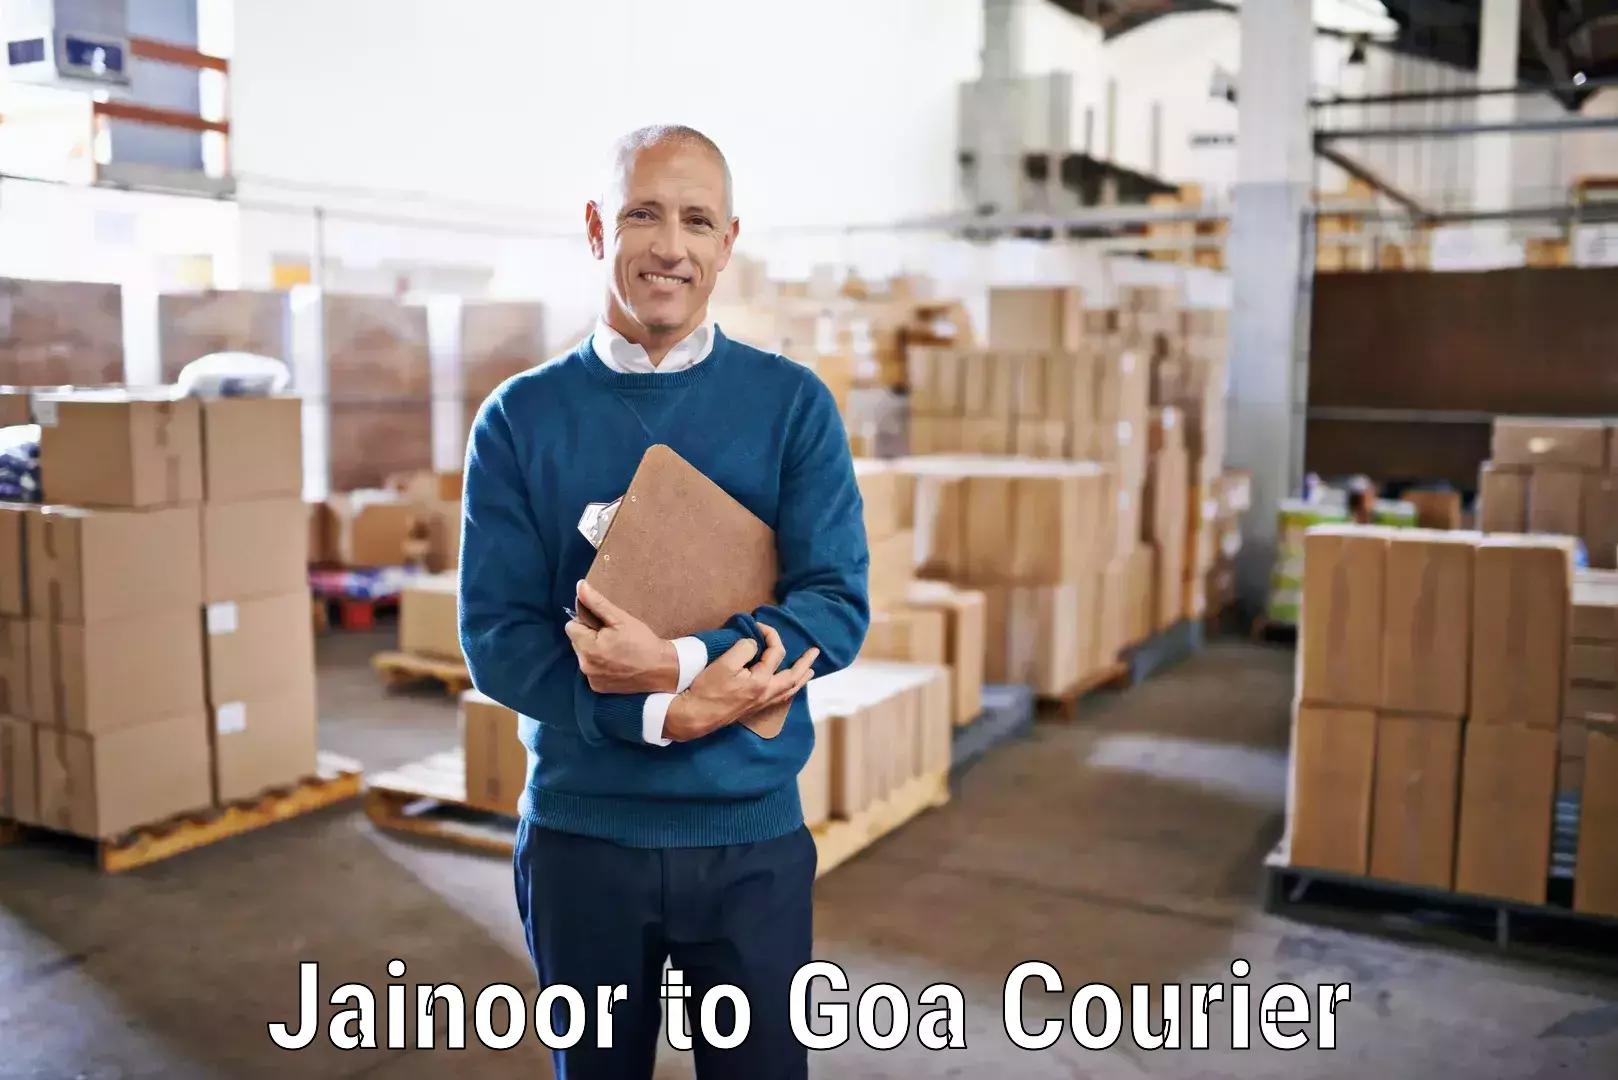 Return courier service Jainoor to Panaji